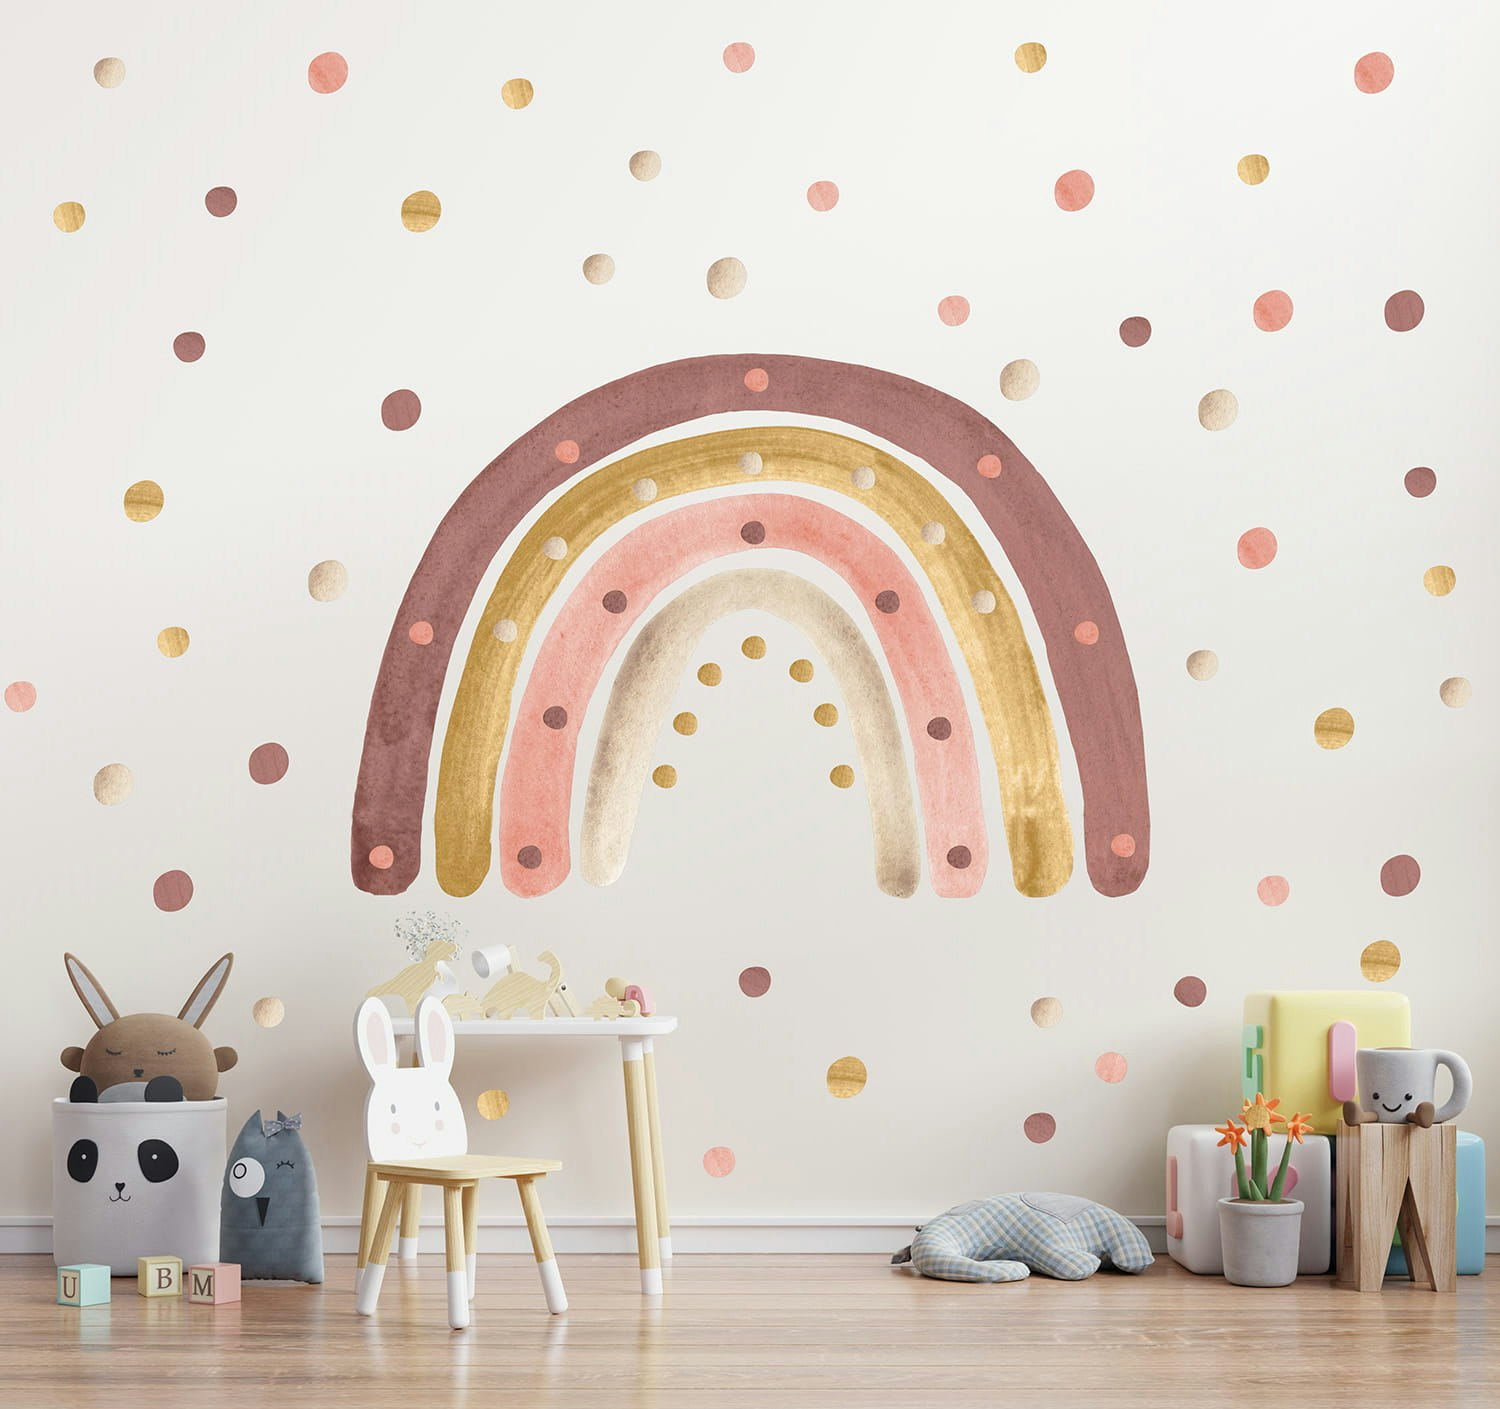 Babylove, väggklistermärke regnbåge med prickar, dusty pink Dusty pink regnbåge med prickar på väggen i ett barnrum